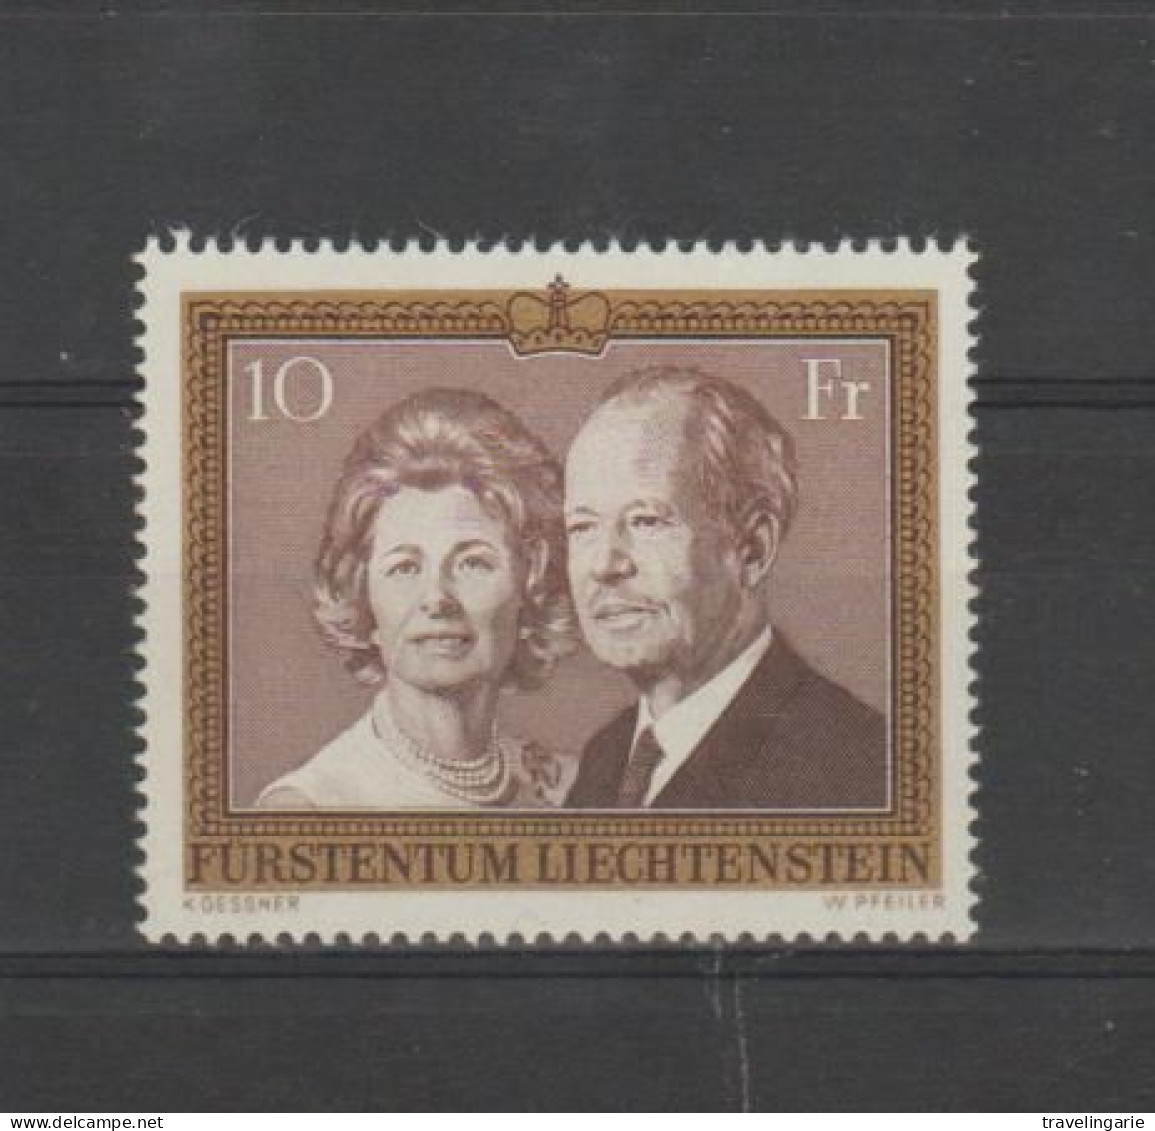 Liechtenstein 1974 Prince Franz Joseph II / Princess Georgine ** MNH - Unused Stamps